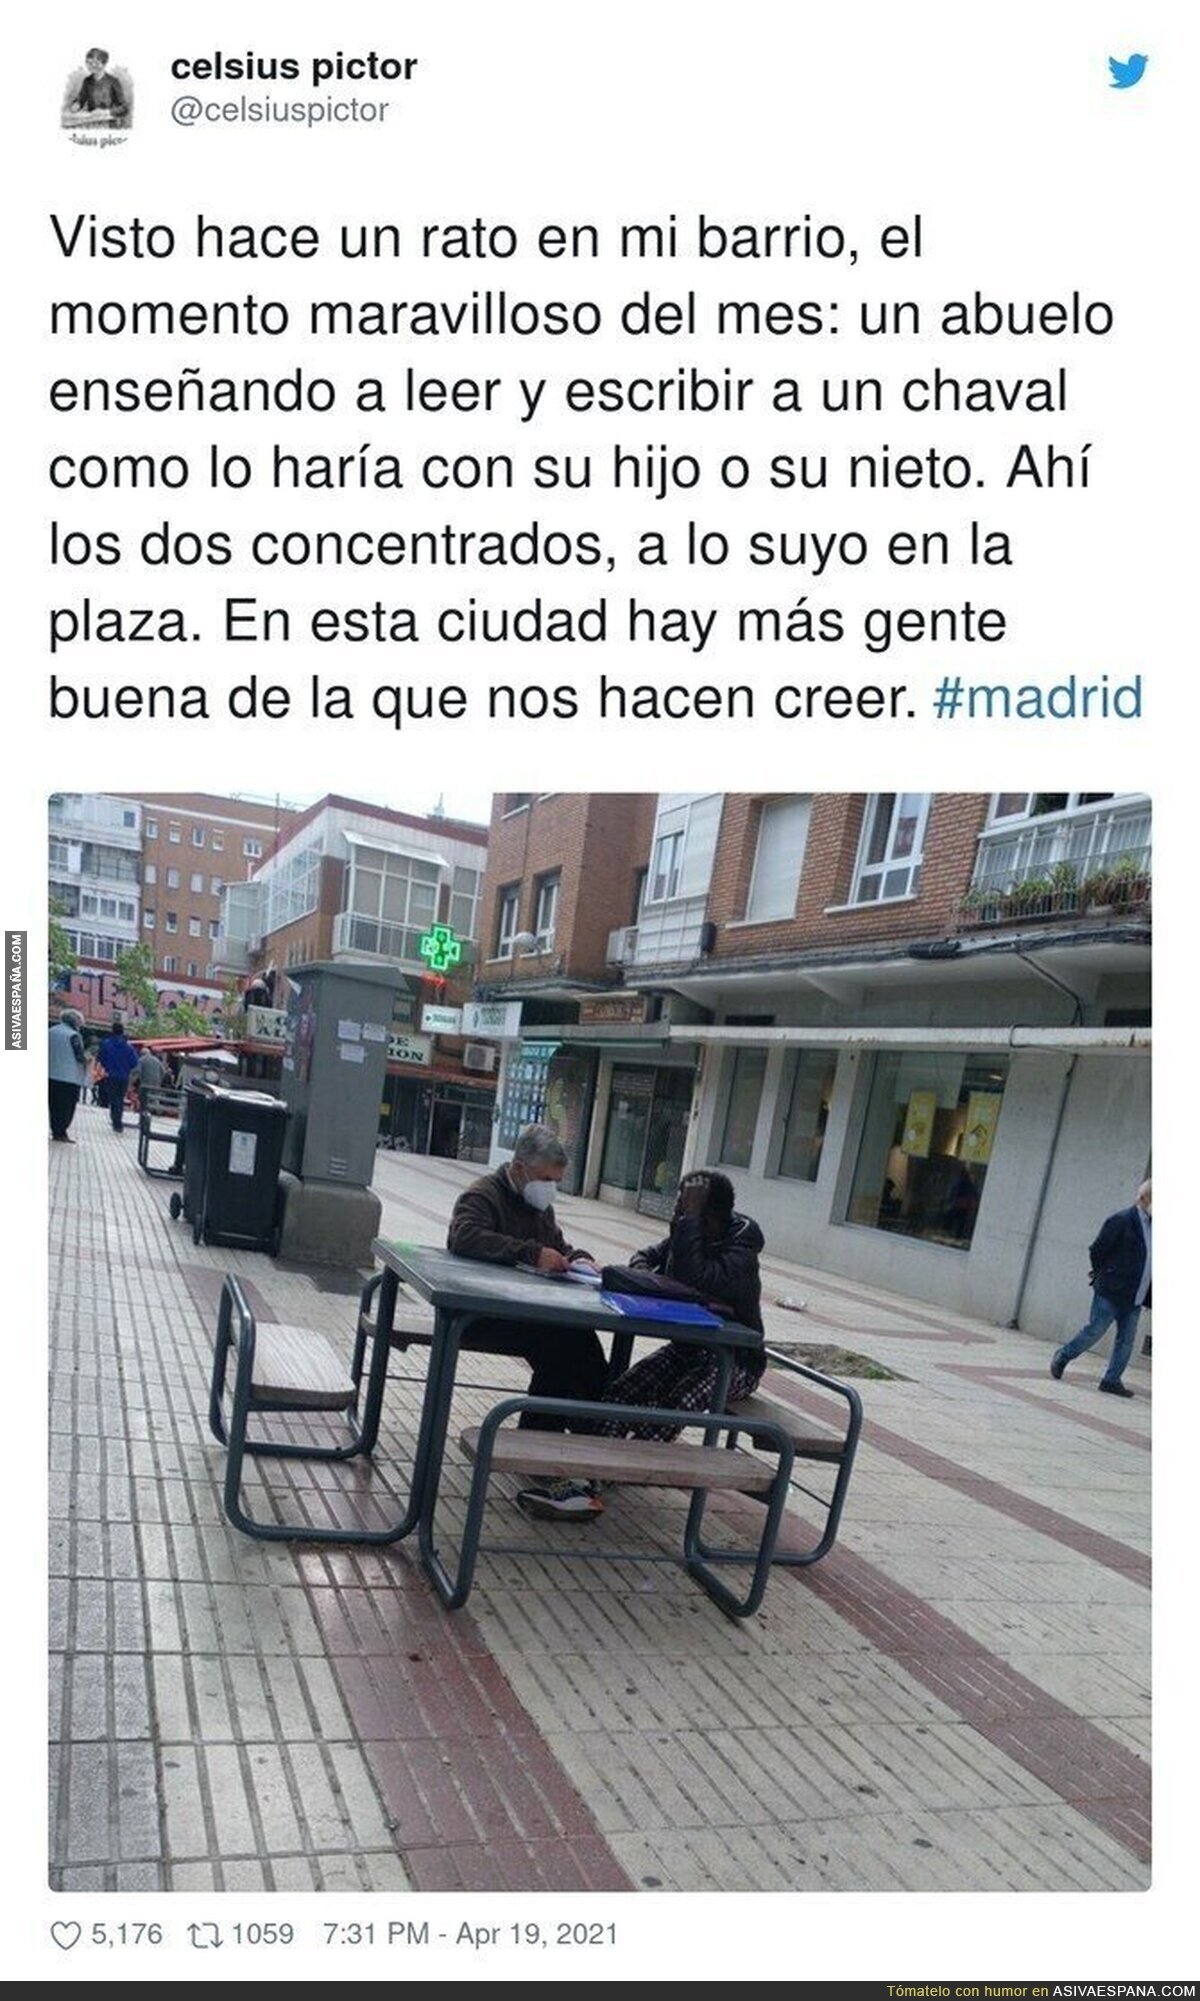 Bonita imagen vista en Madrid pese al odio que muchos quieren sembrar